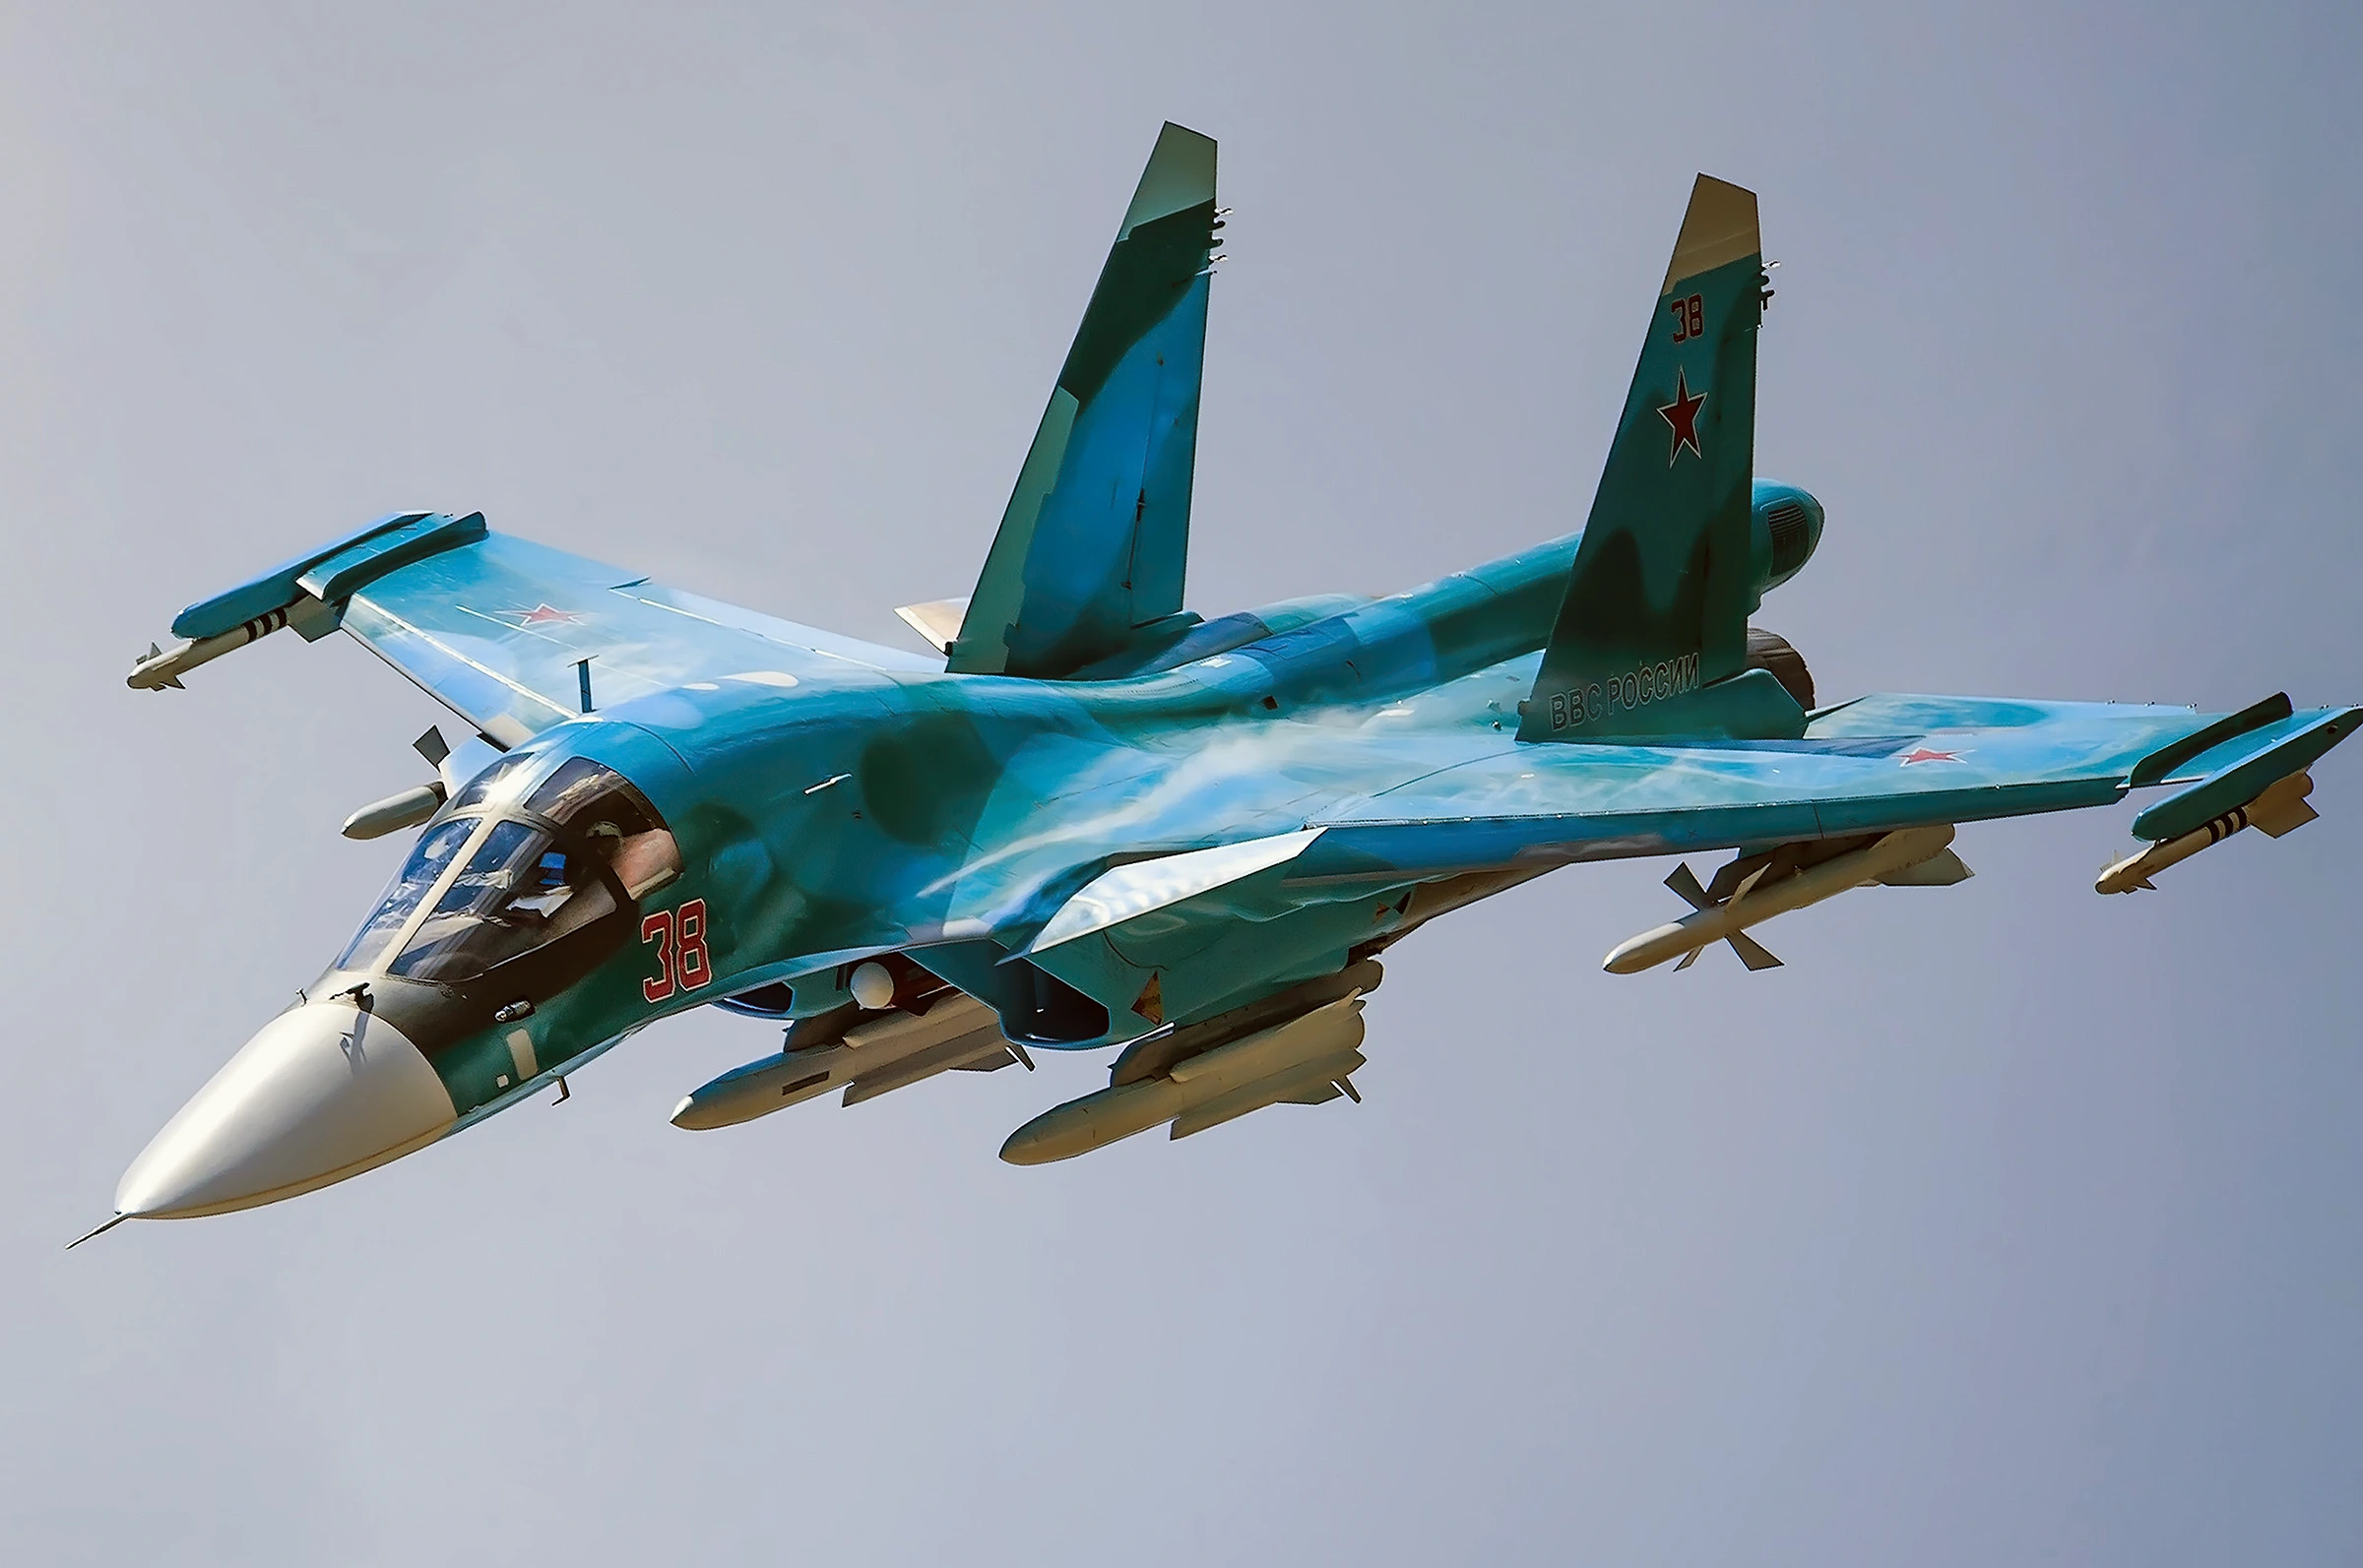 Sukhoi Su-34 Fullback: El punto débil de la flota aérea rusa